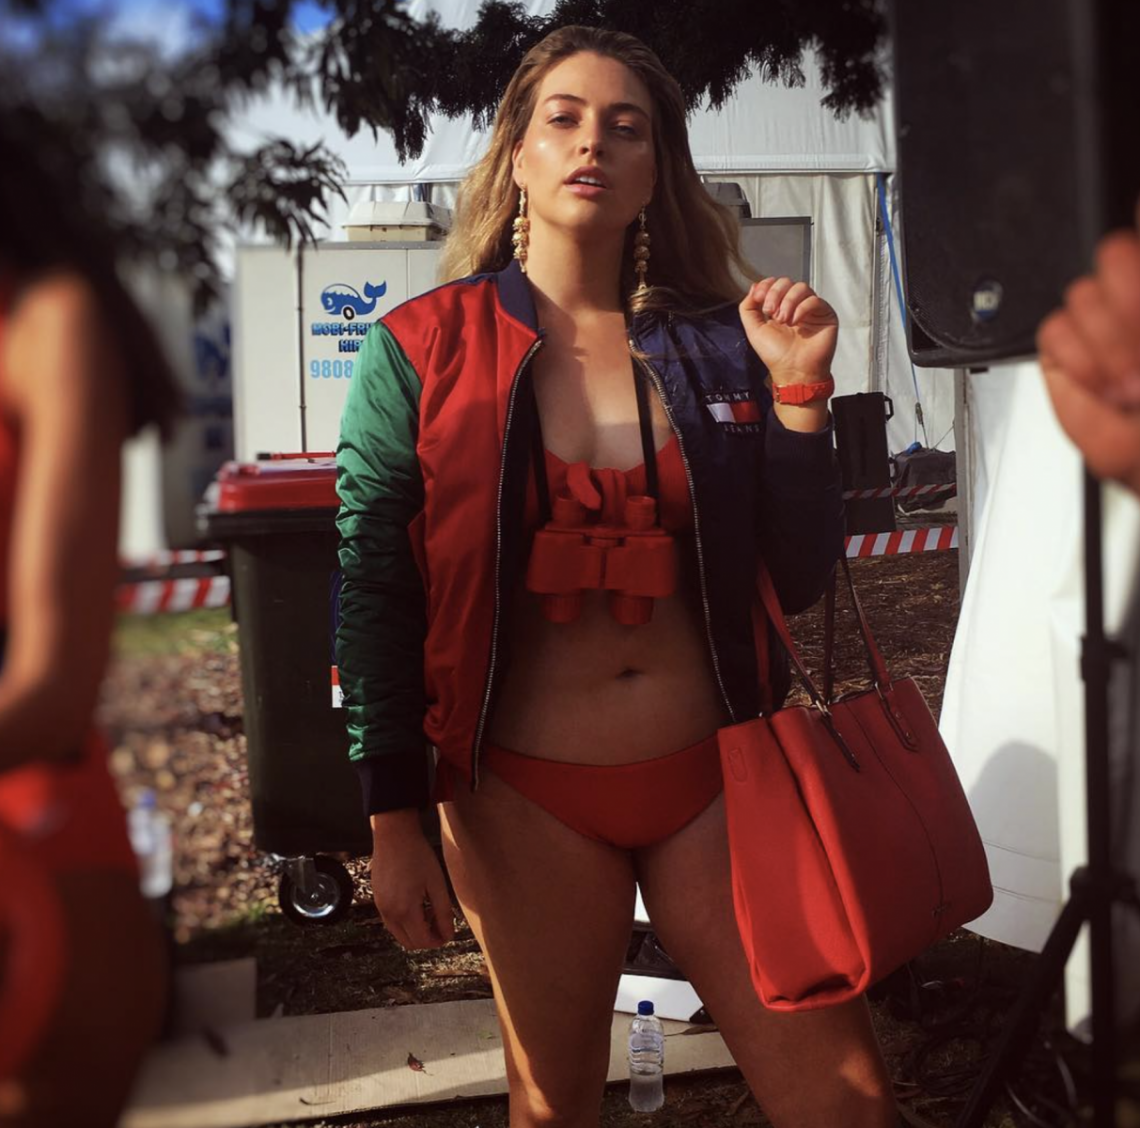 Balistarz-model-Jess-Earle-portrait-shoot-in-a-jacket-and-bikini-in-summer